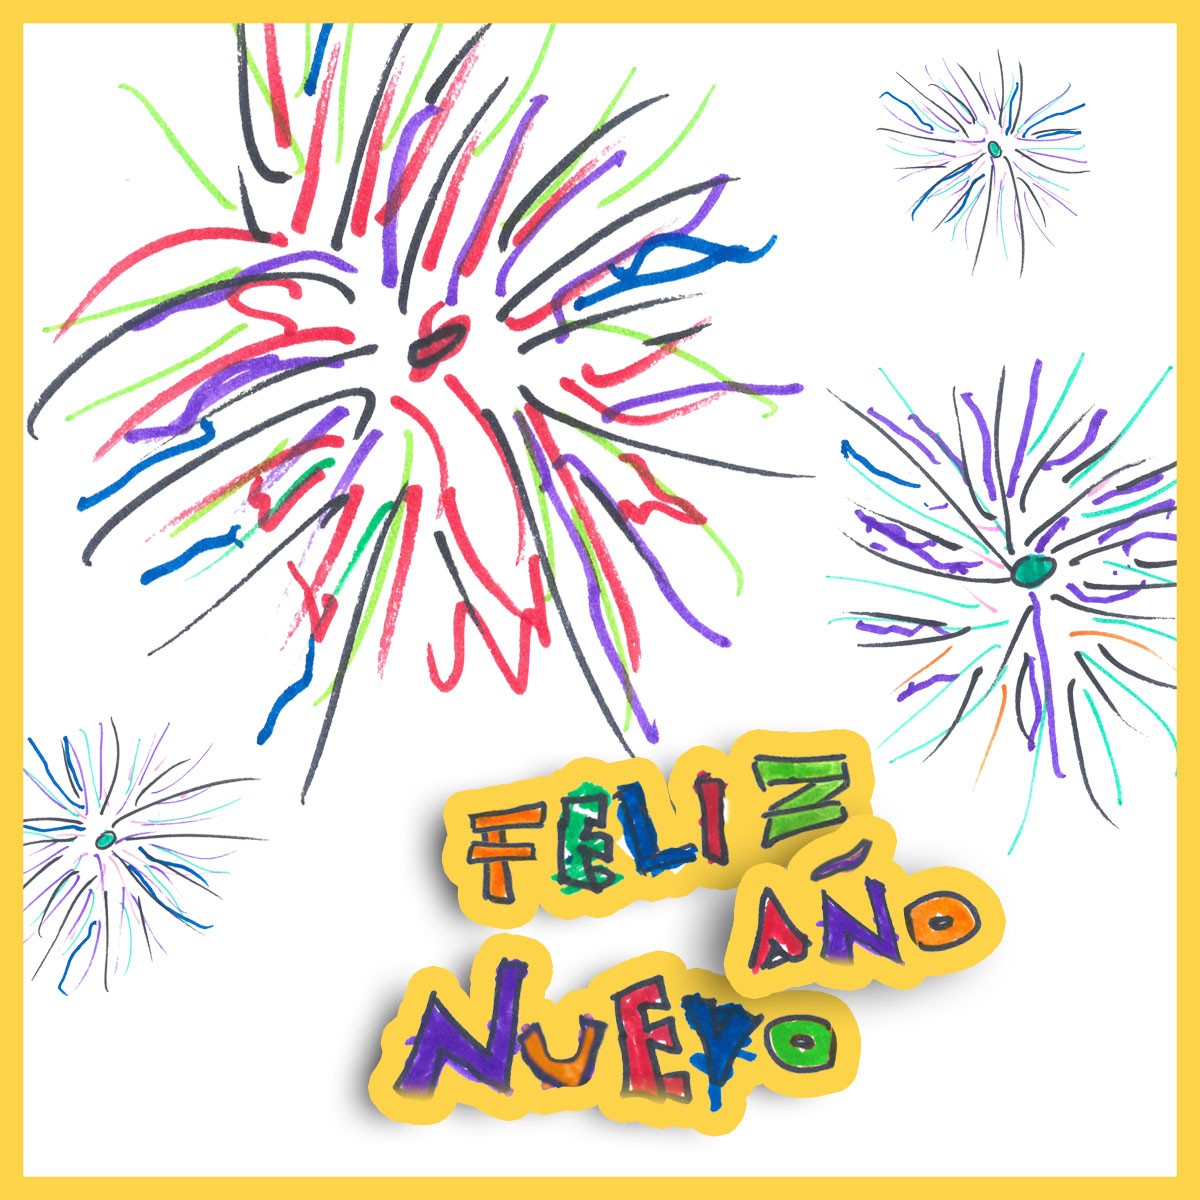 Dibujo de fuegos artificiales de múltiples coloresz, con un mensaje sobreimpuesto que dice “Feliz Año Nuevo”.